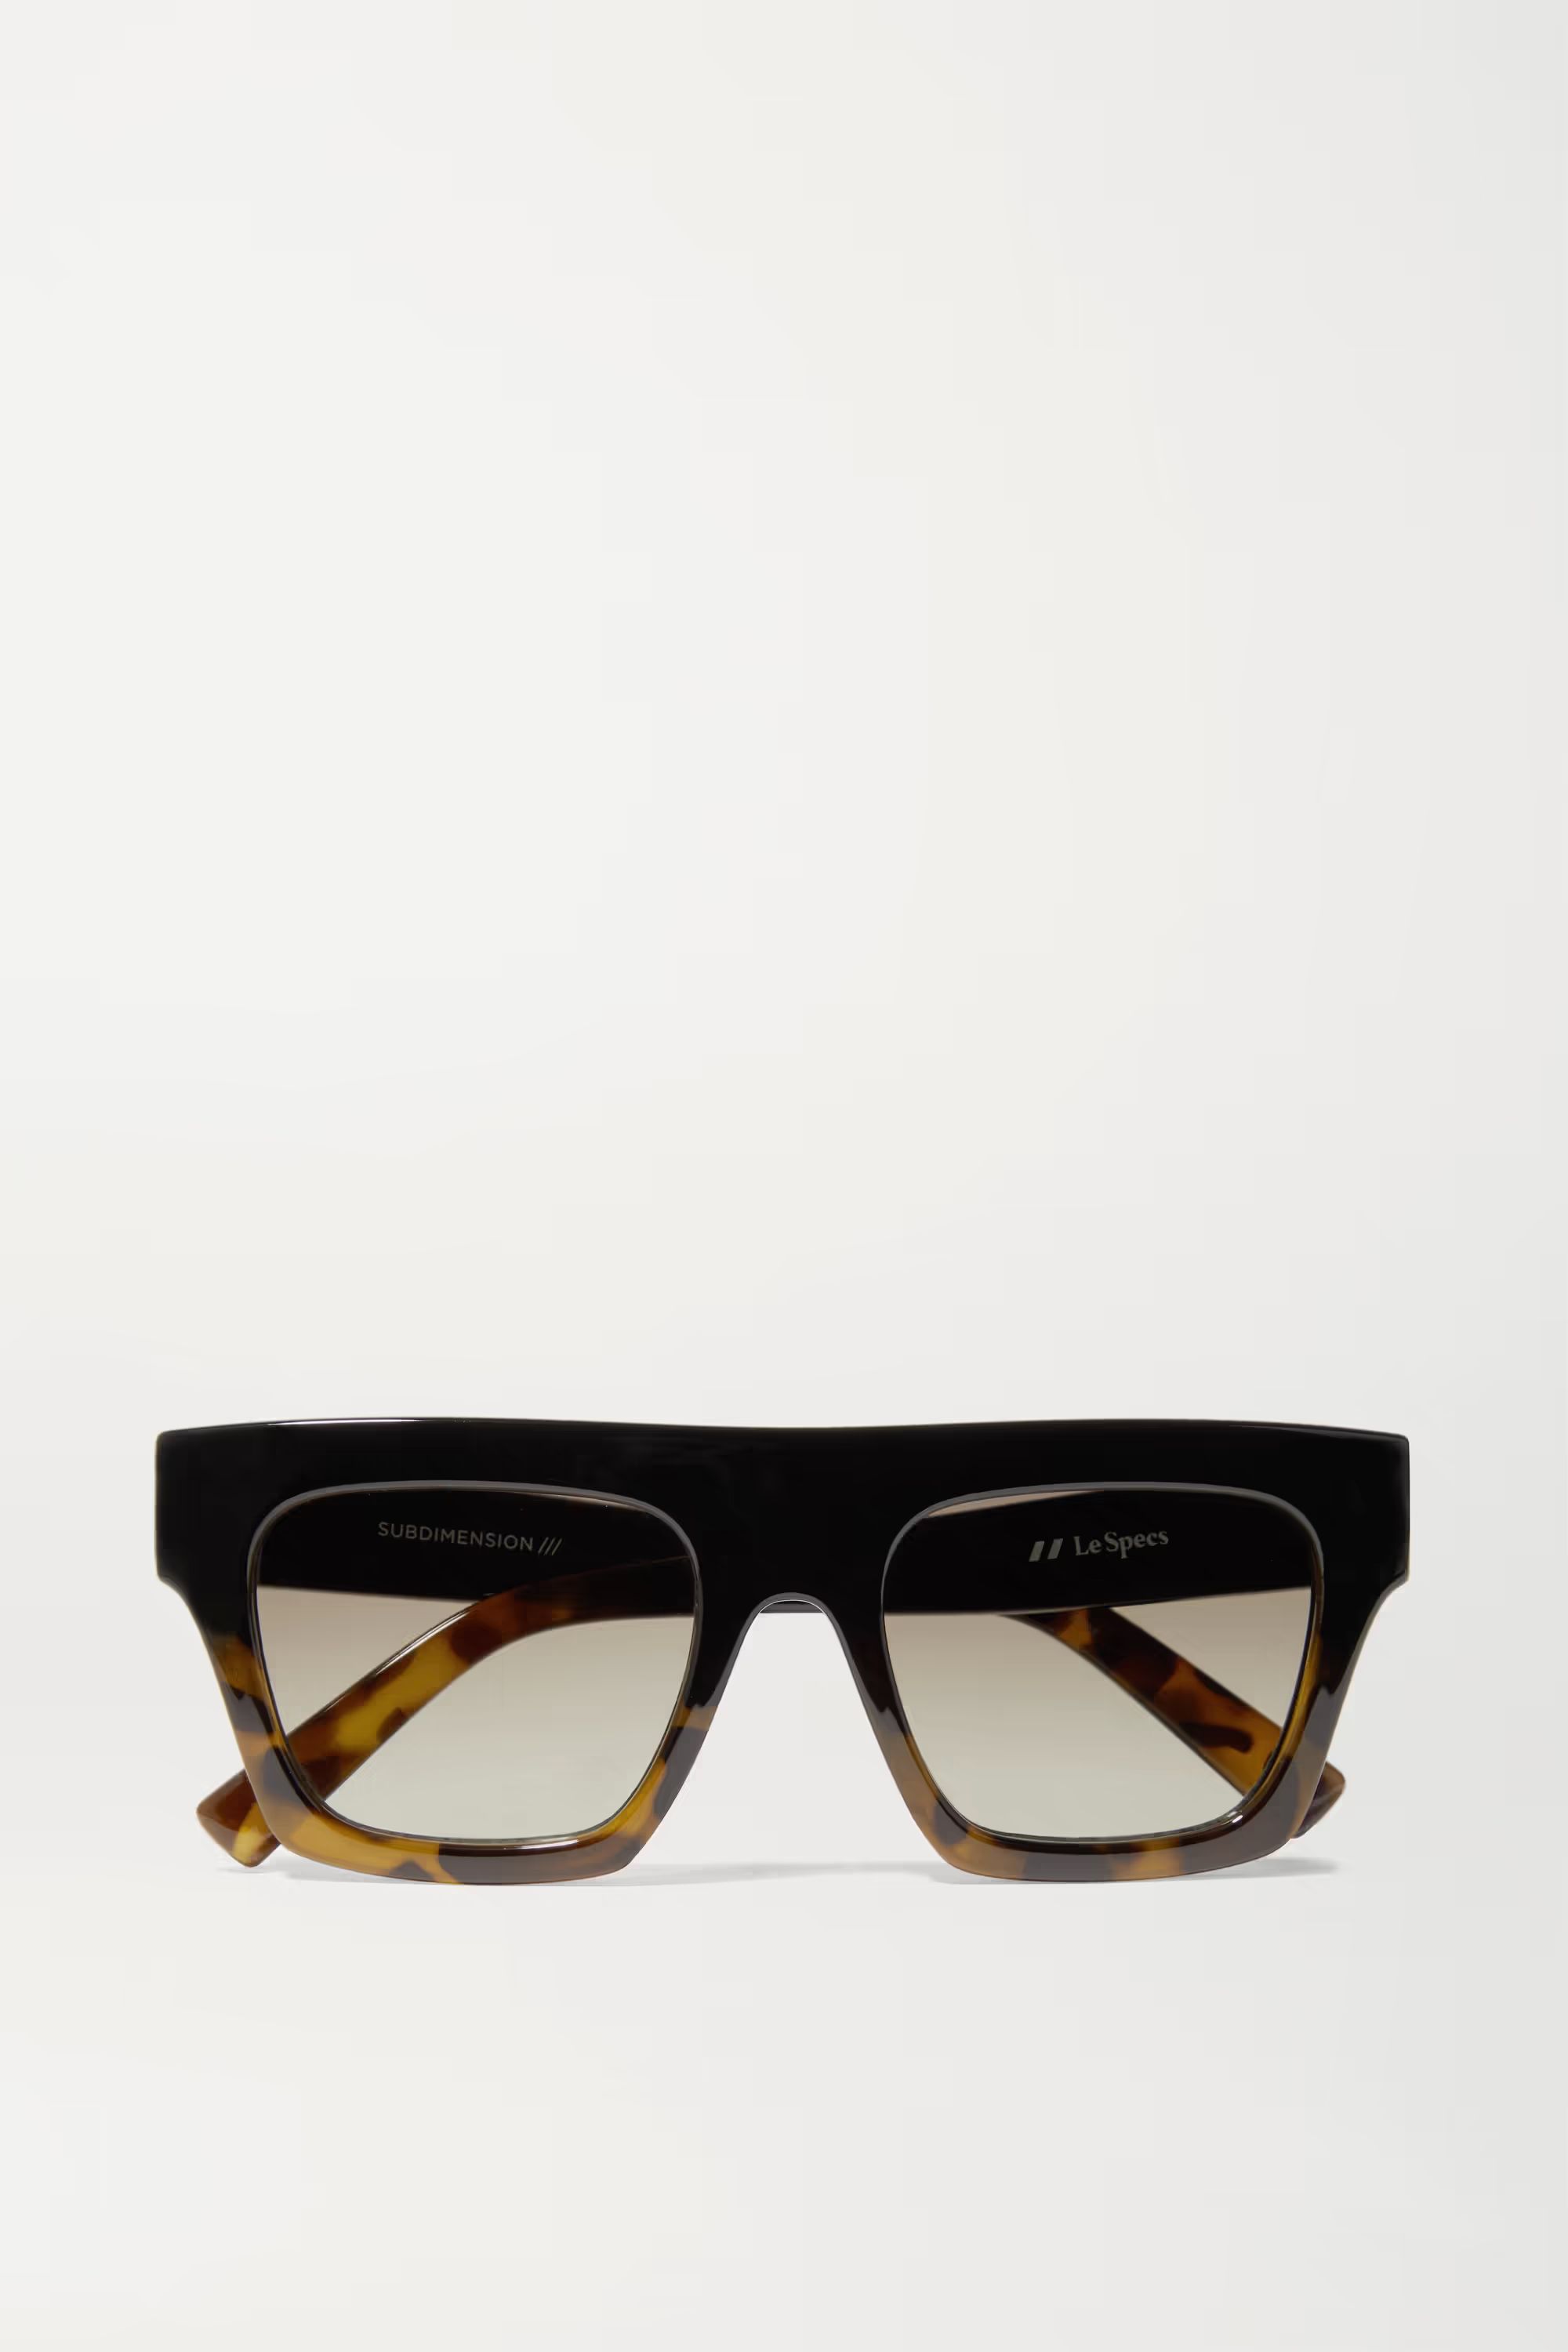 Subdimension D-frame tortoiseshell acetate sunglasses | NET-A-PORTER (UK & EU)